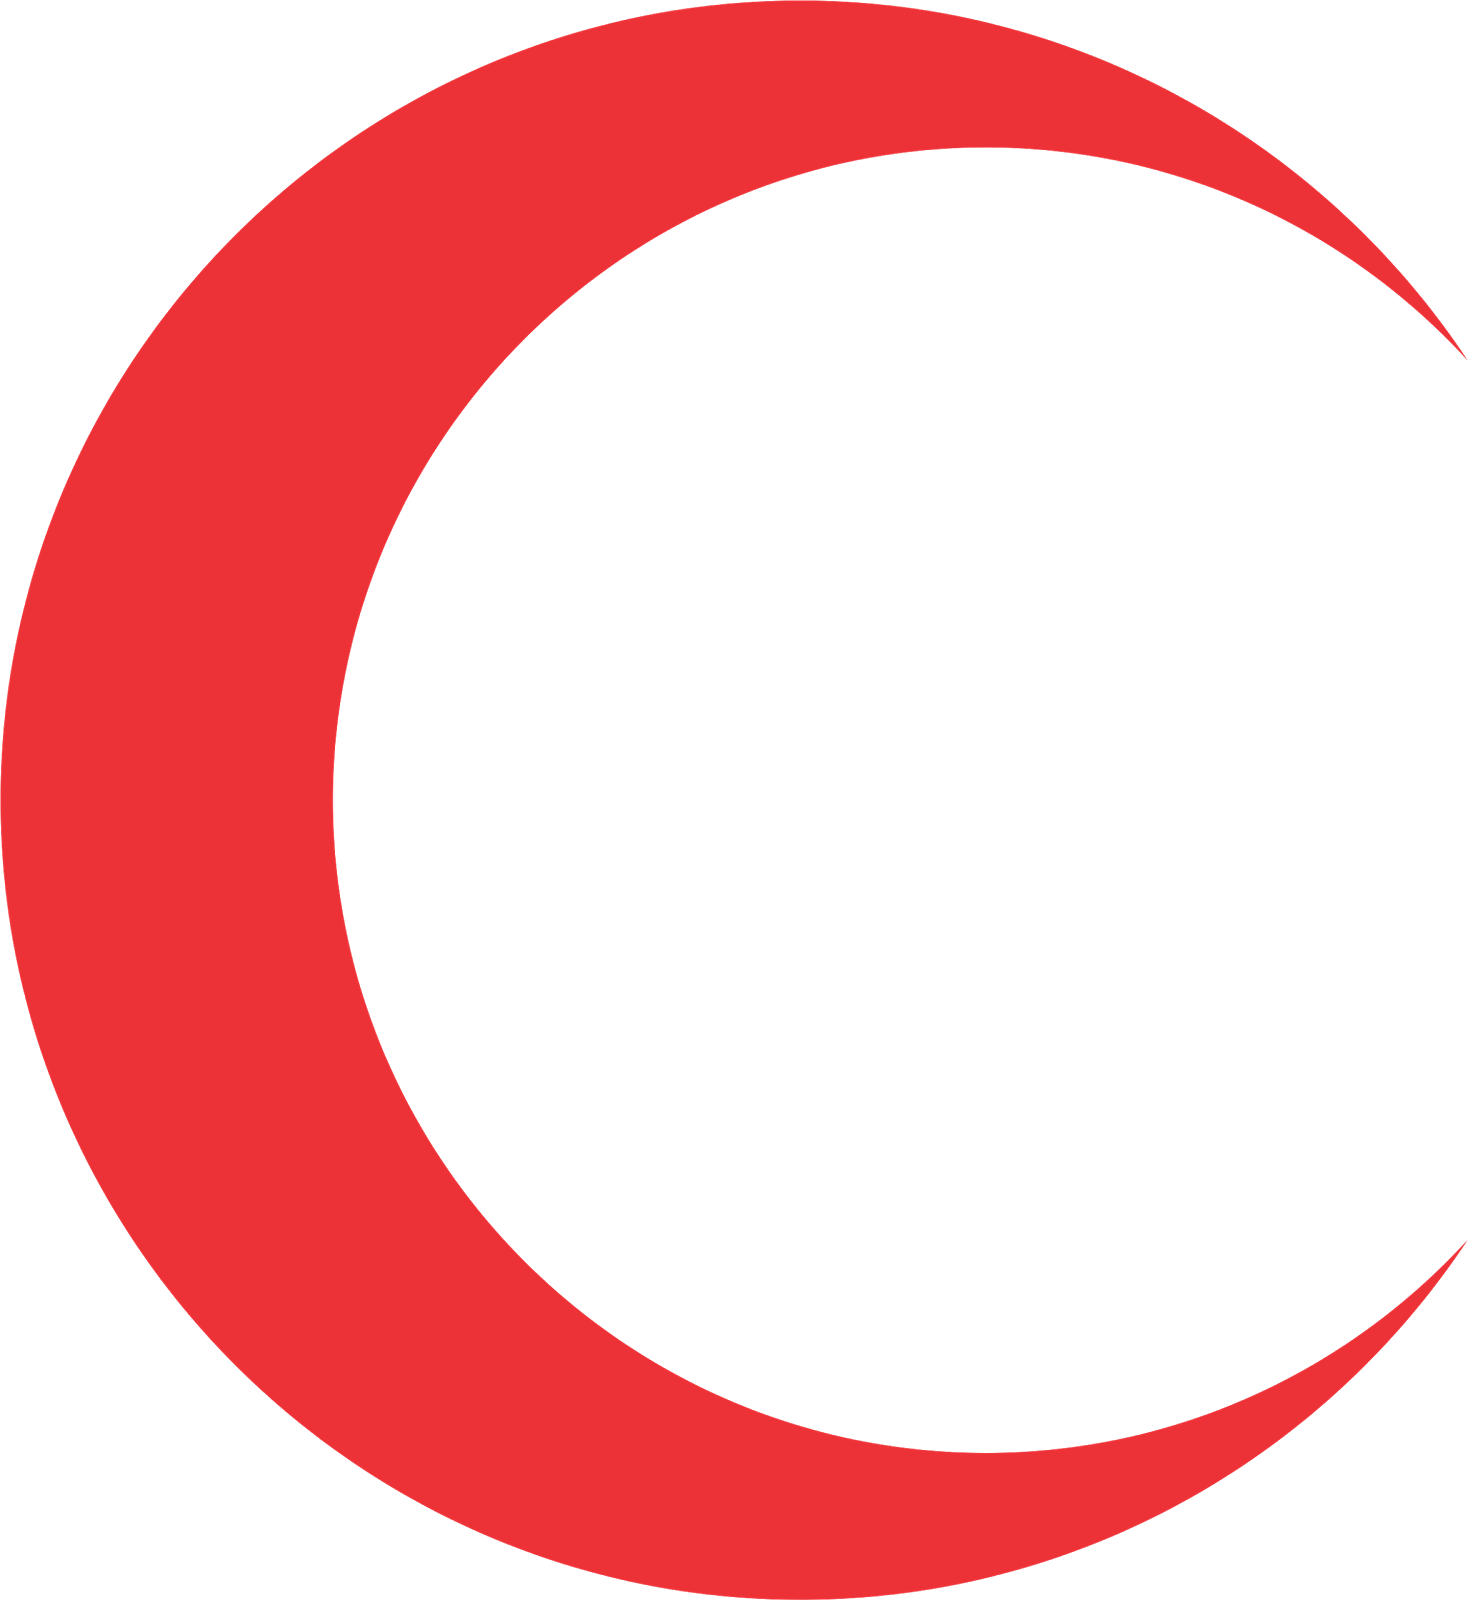 logo bulan sabit merah